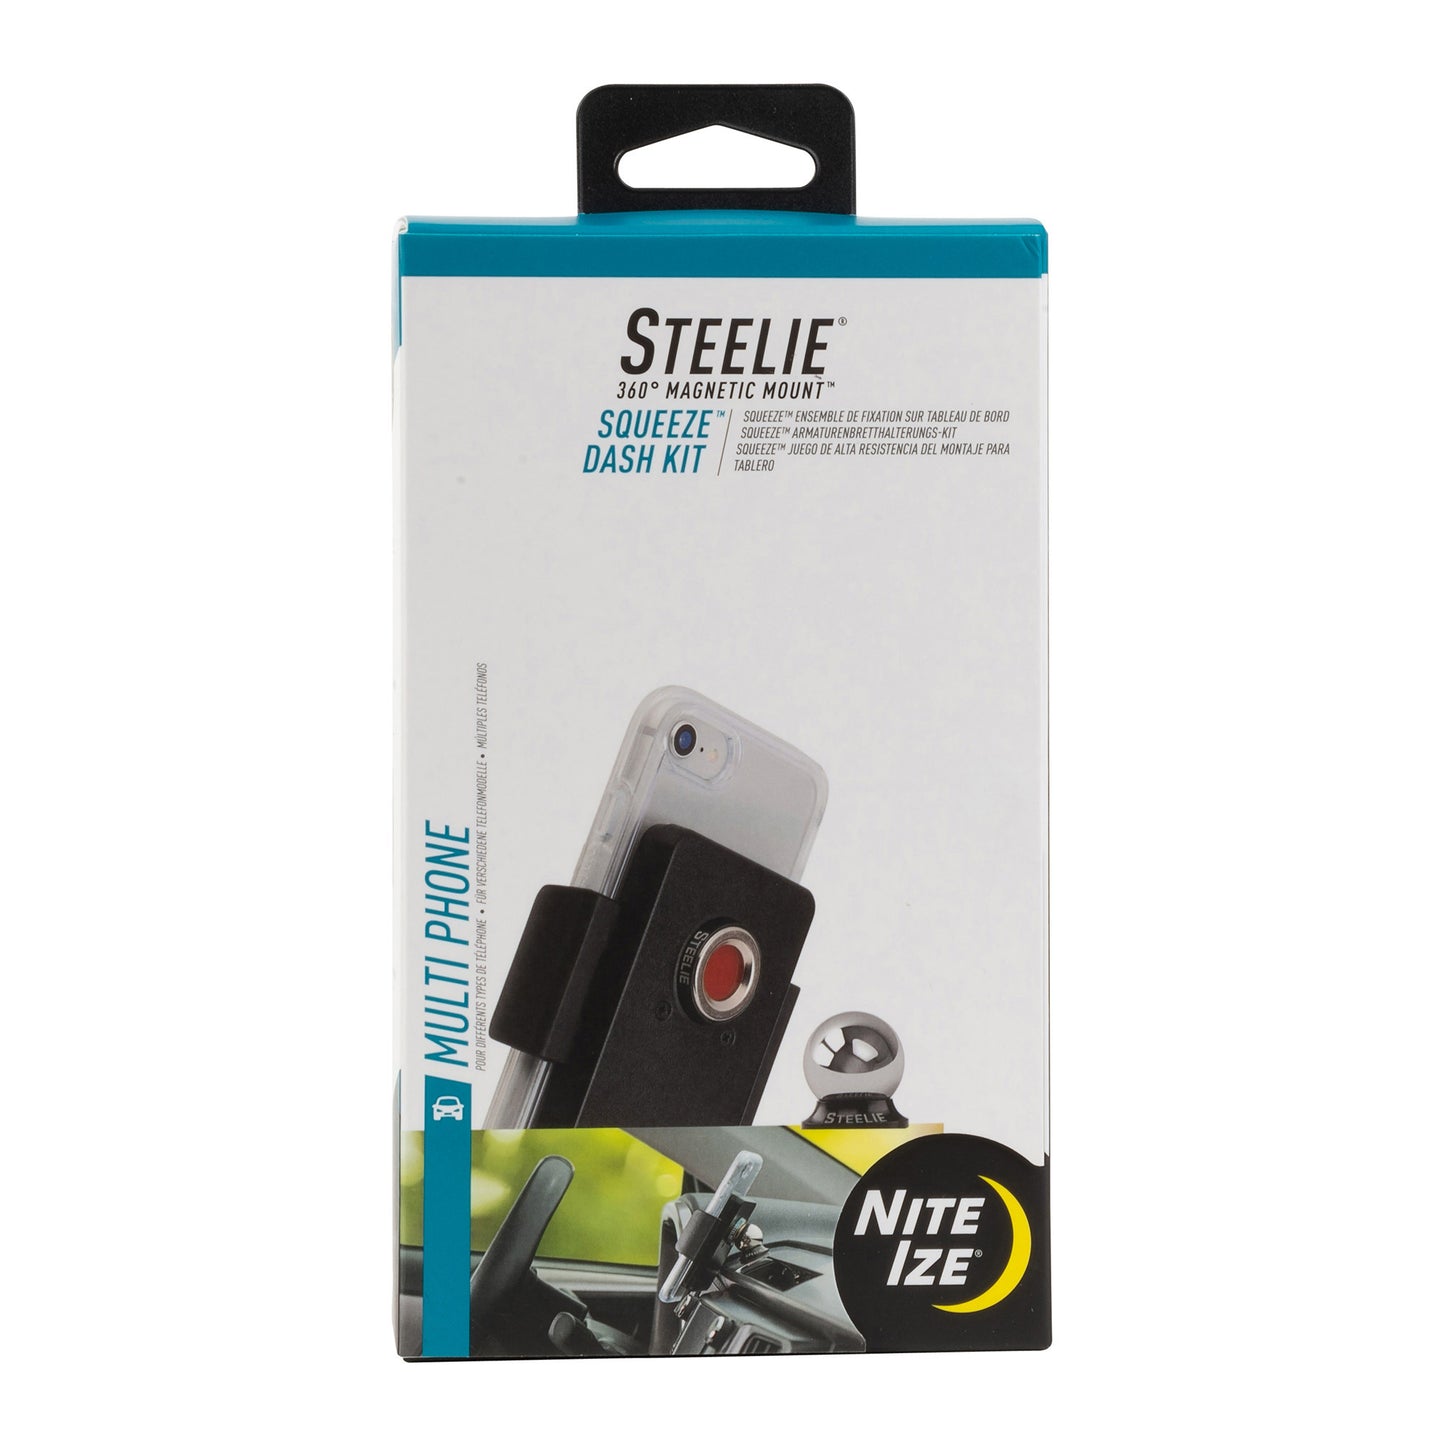 Nite Ize Steelie Squeeze Dash Kit - 15-09670